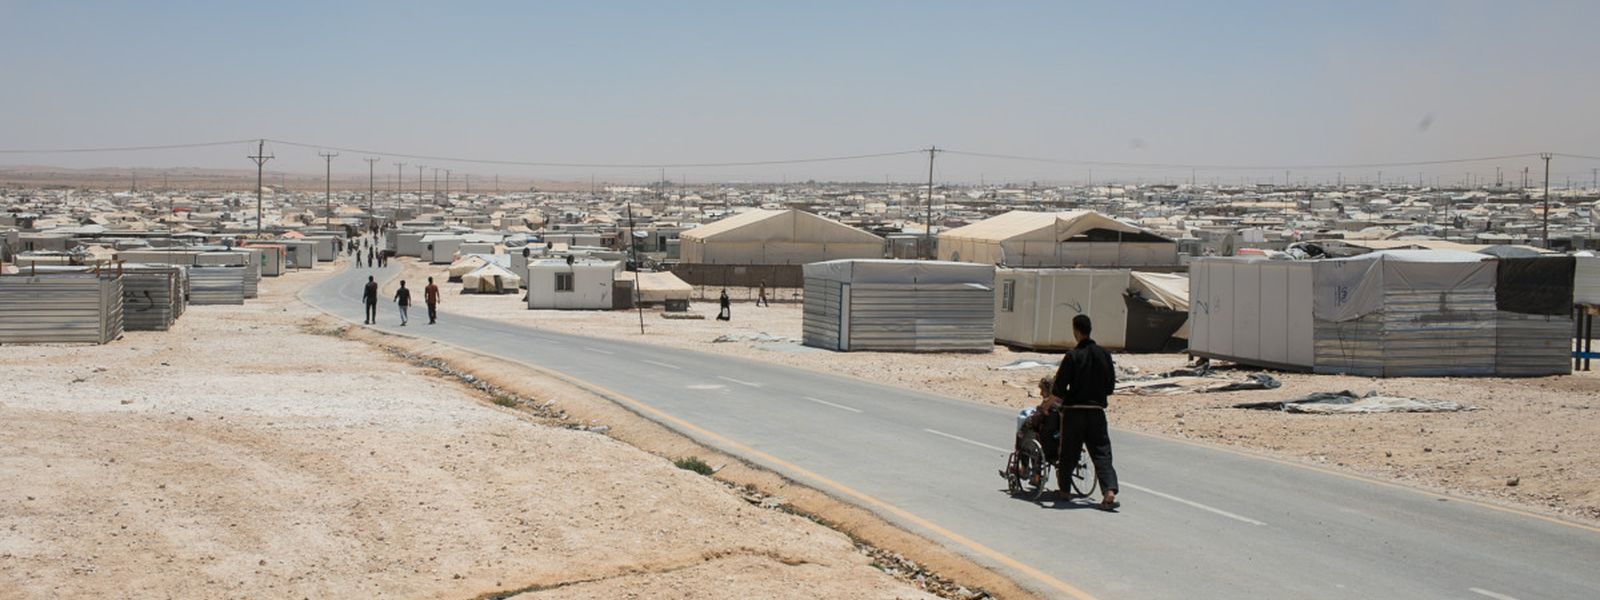 Ein Mensch im Rollstuhl wird durch ein Flüchtlingslager in der Wüste geschoben.